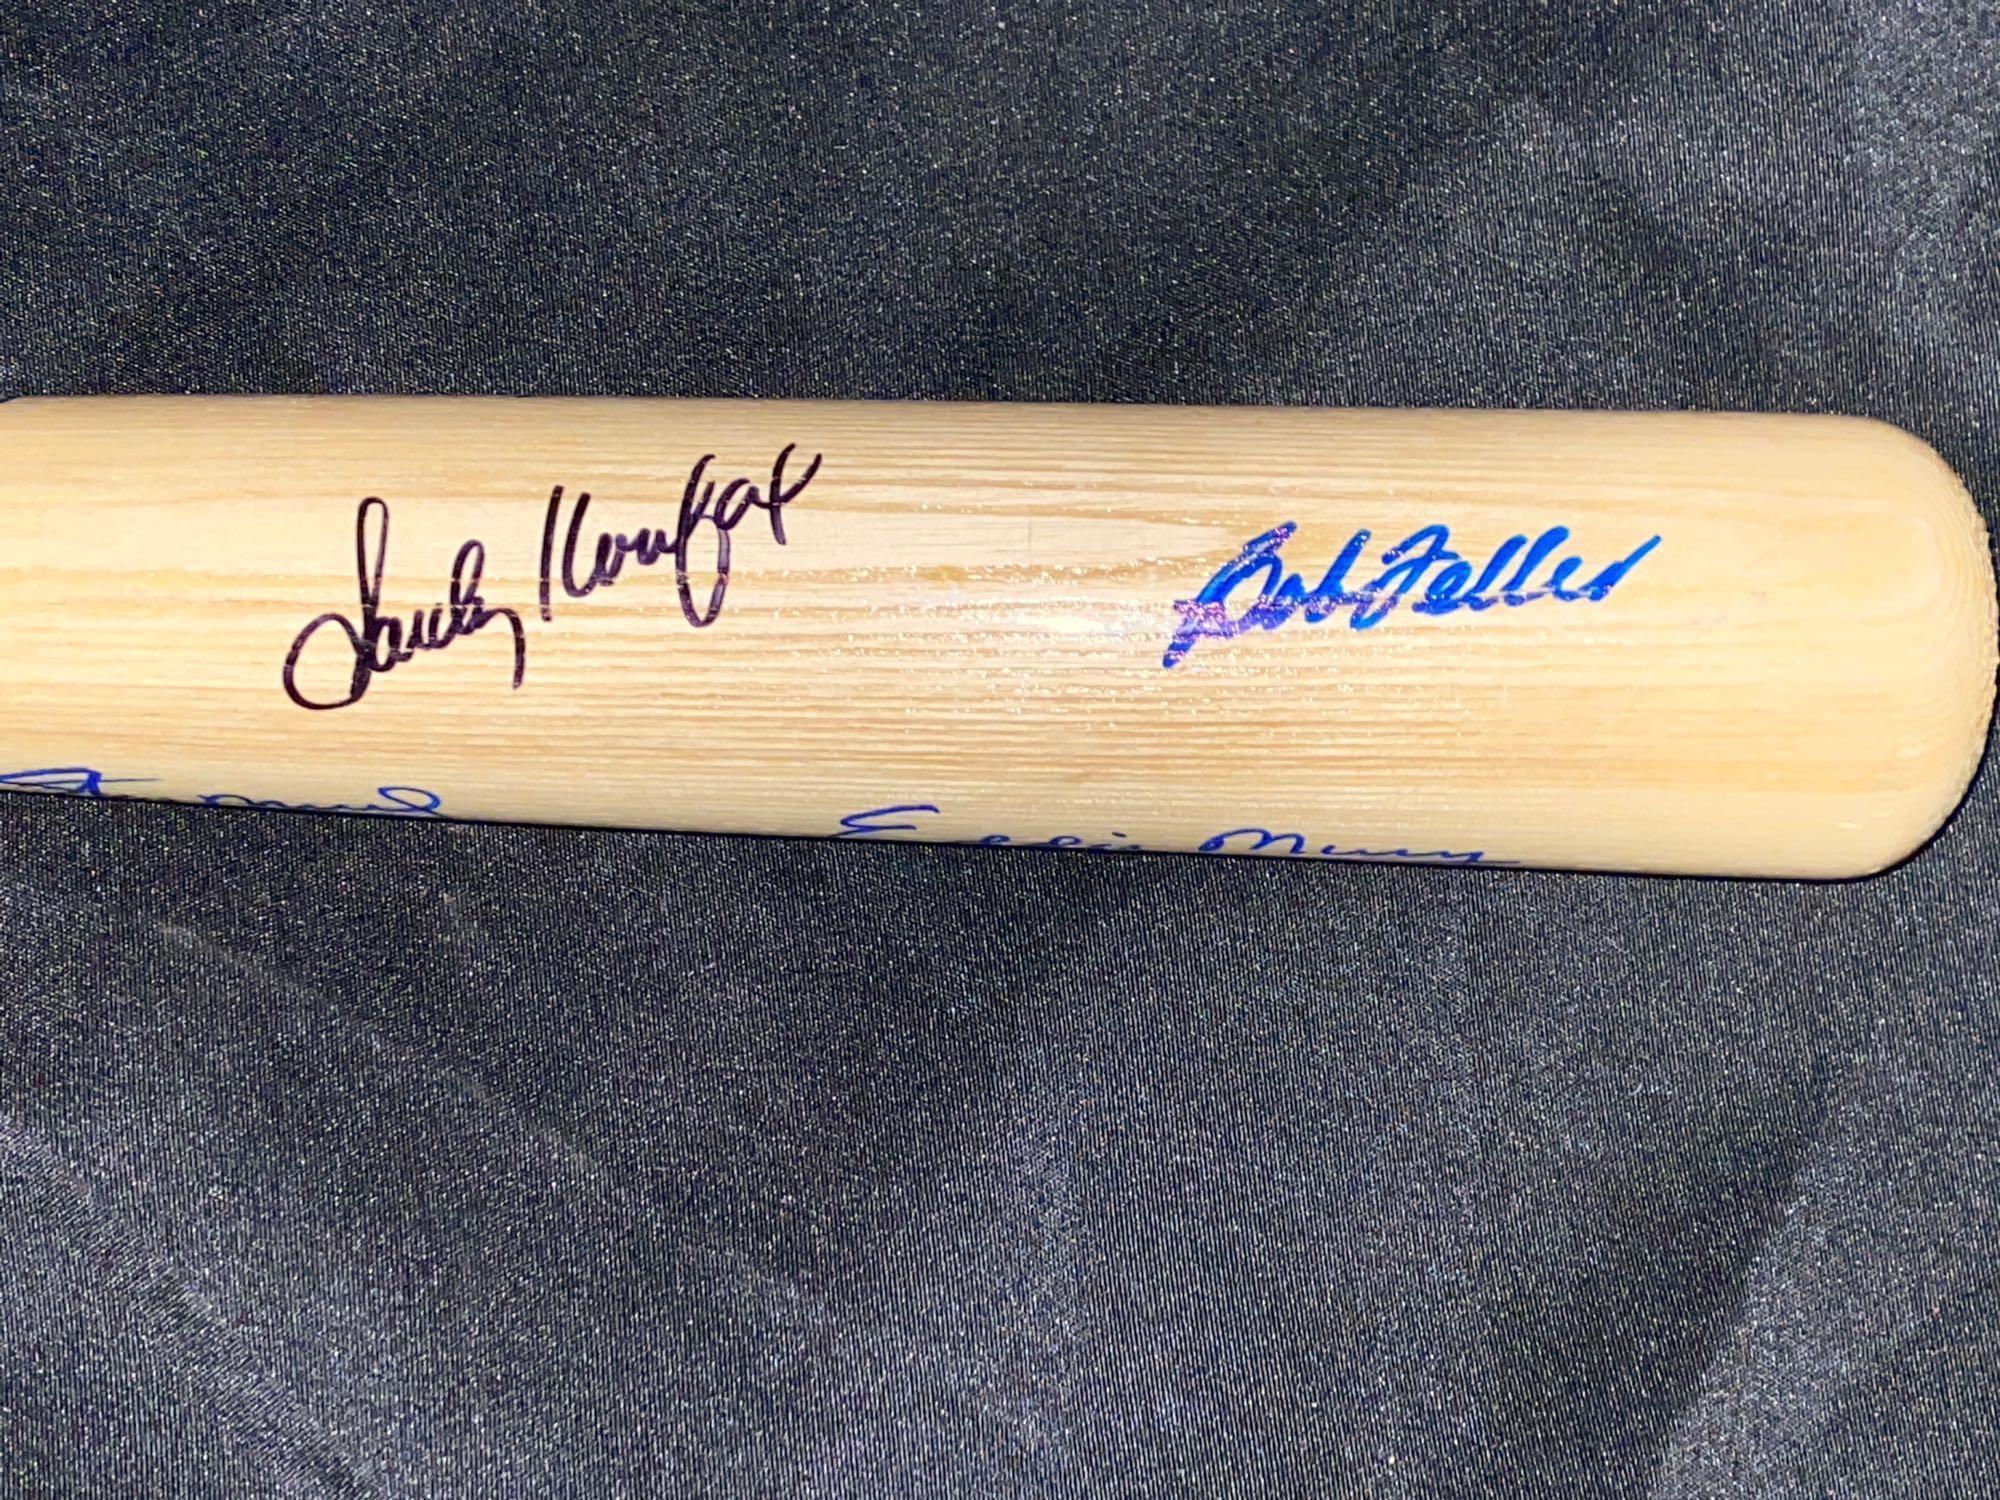 Rawlings Pro 34" baseball bat w/ (7) autographs